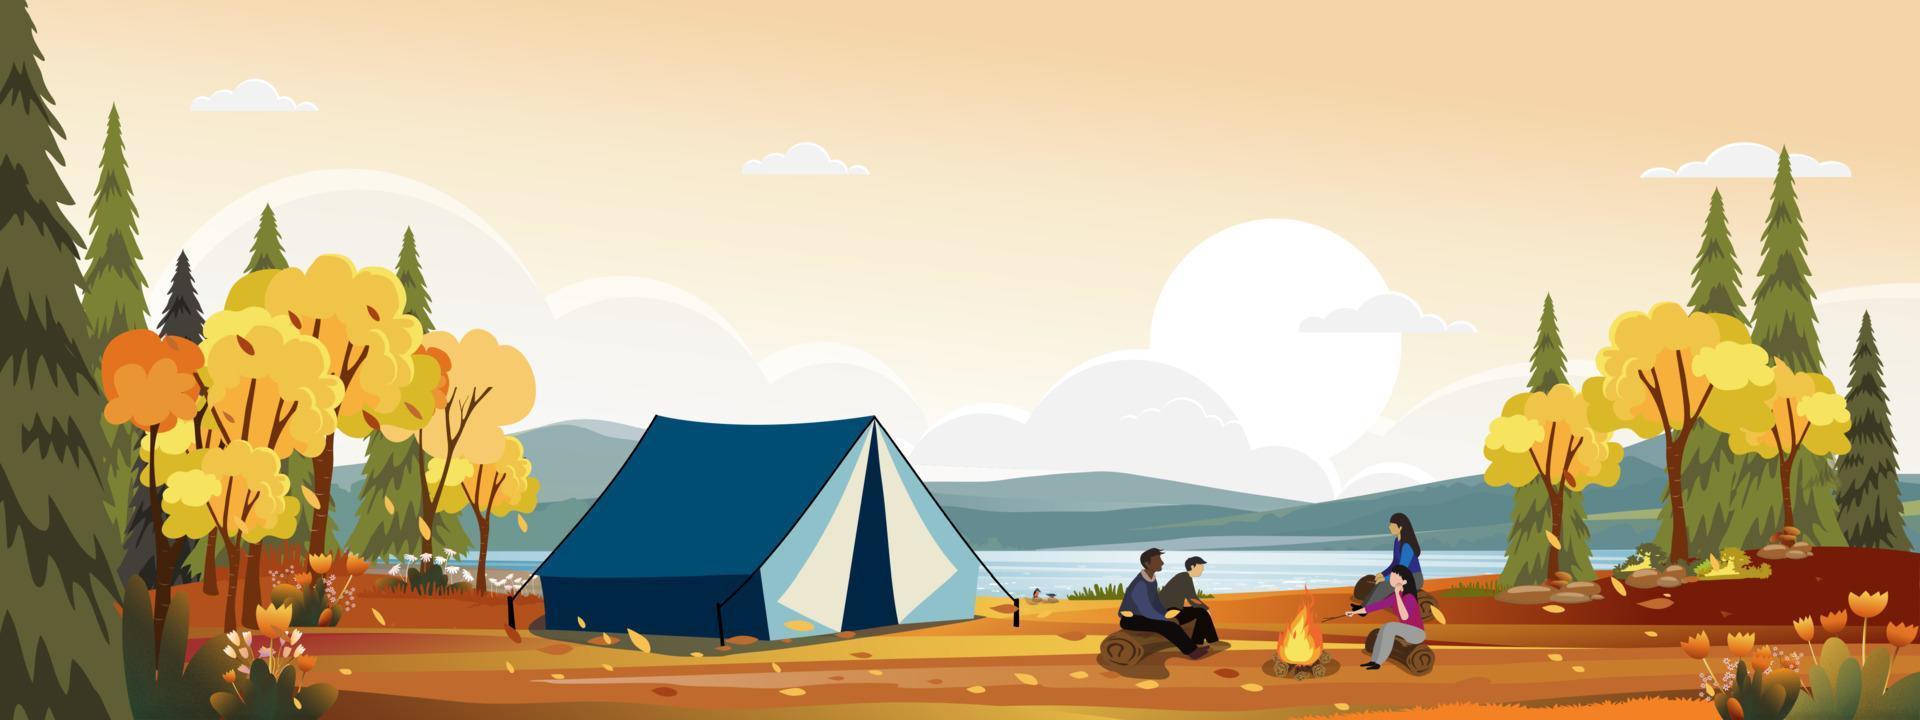 scène d'automne avec une famille profitant de vacances en camping à la campagne au bord de la rivière, des gens assis près de la tente et du feu de camp s'amusant à parler ensemble, paysage rural vectoriel dans la forêt d'automne avec coucher de soleil